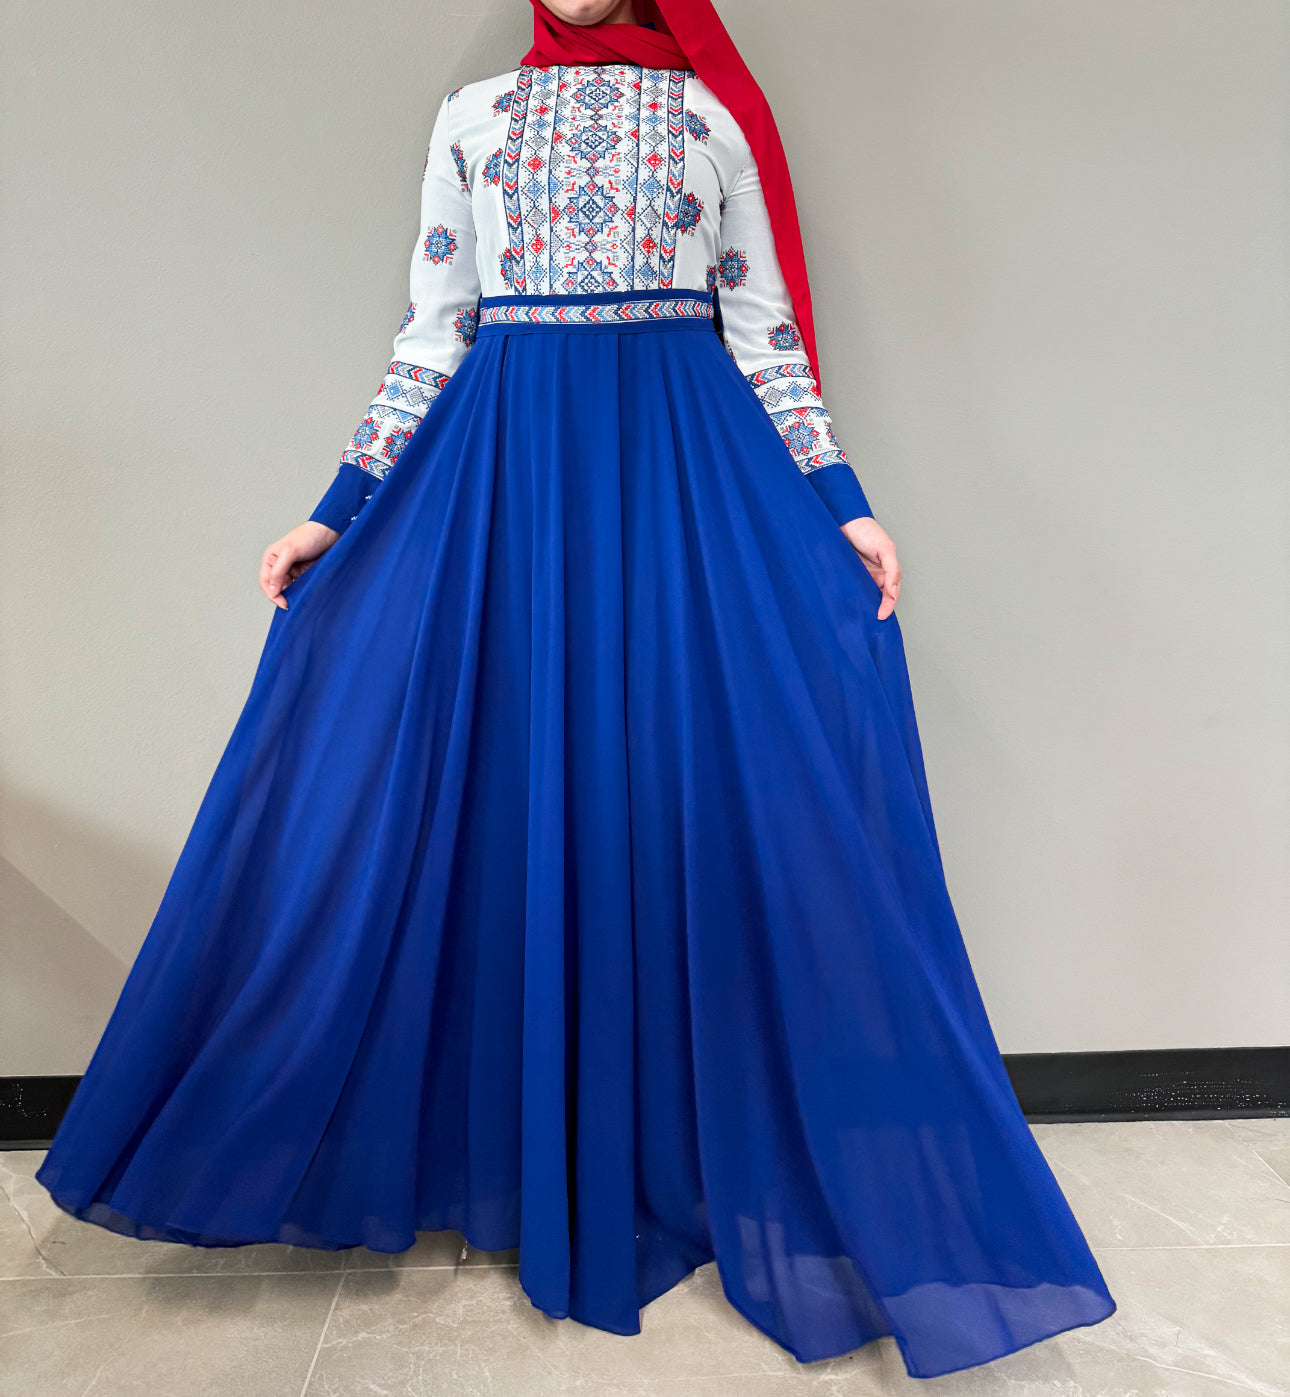 Embroidered Chiffon Dress - Royal Blue